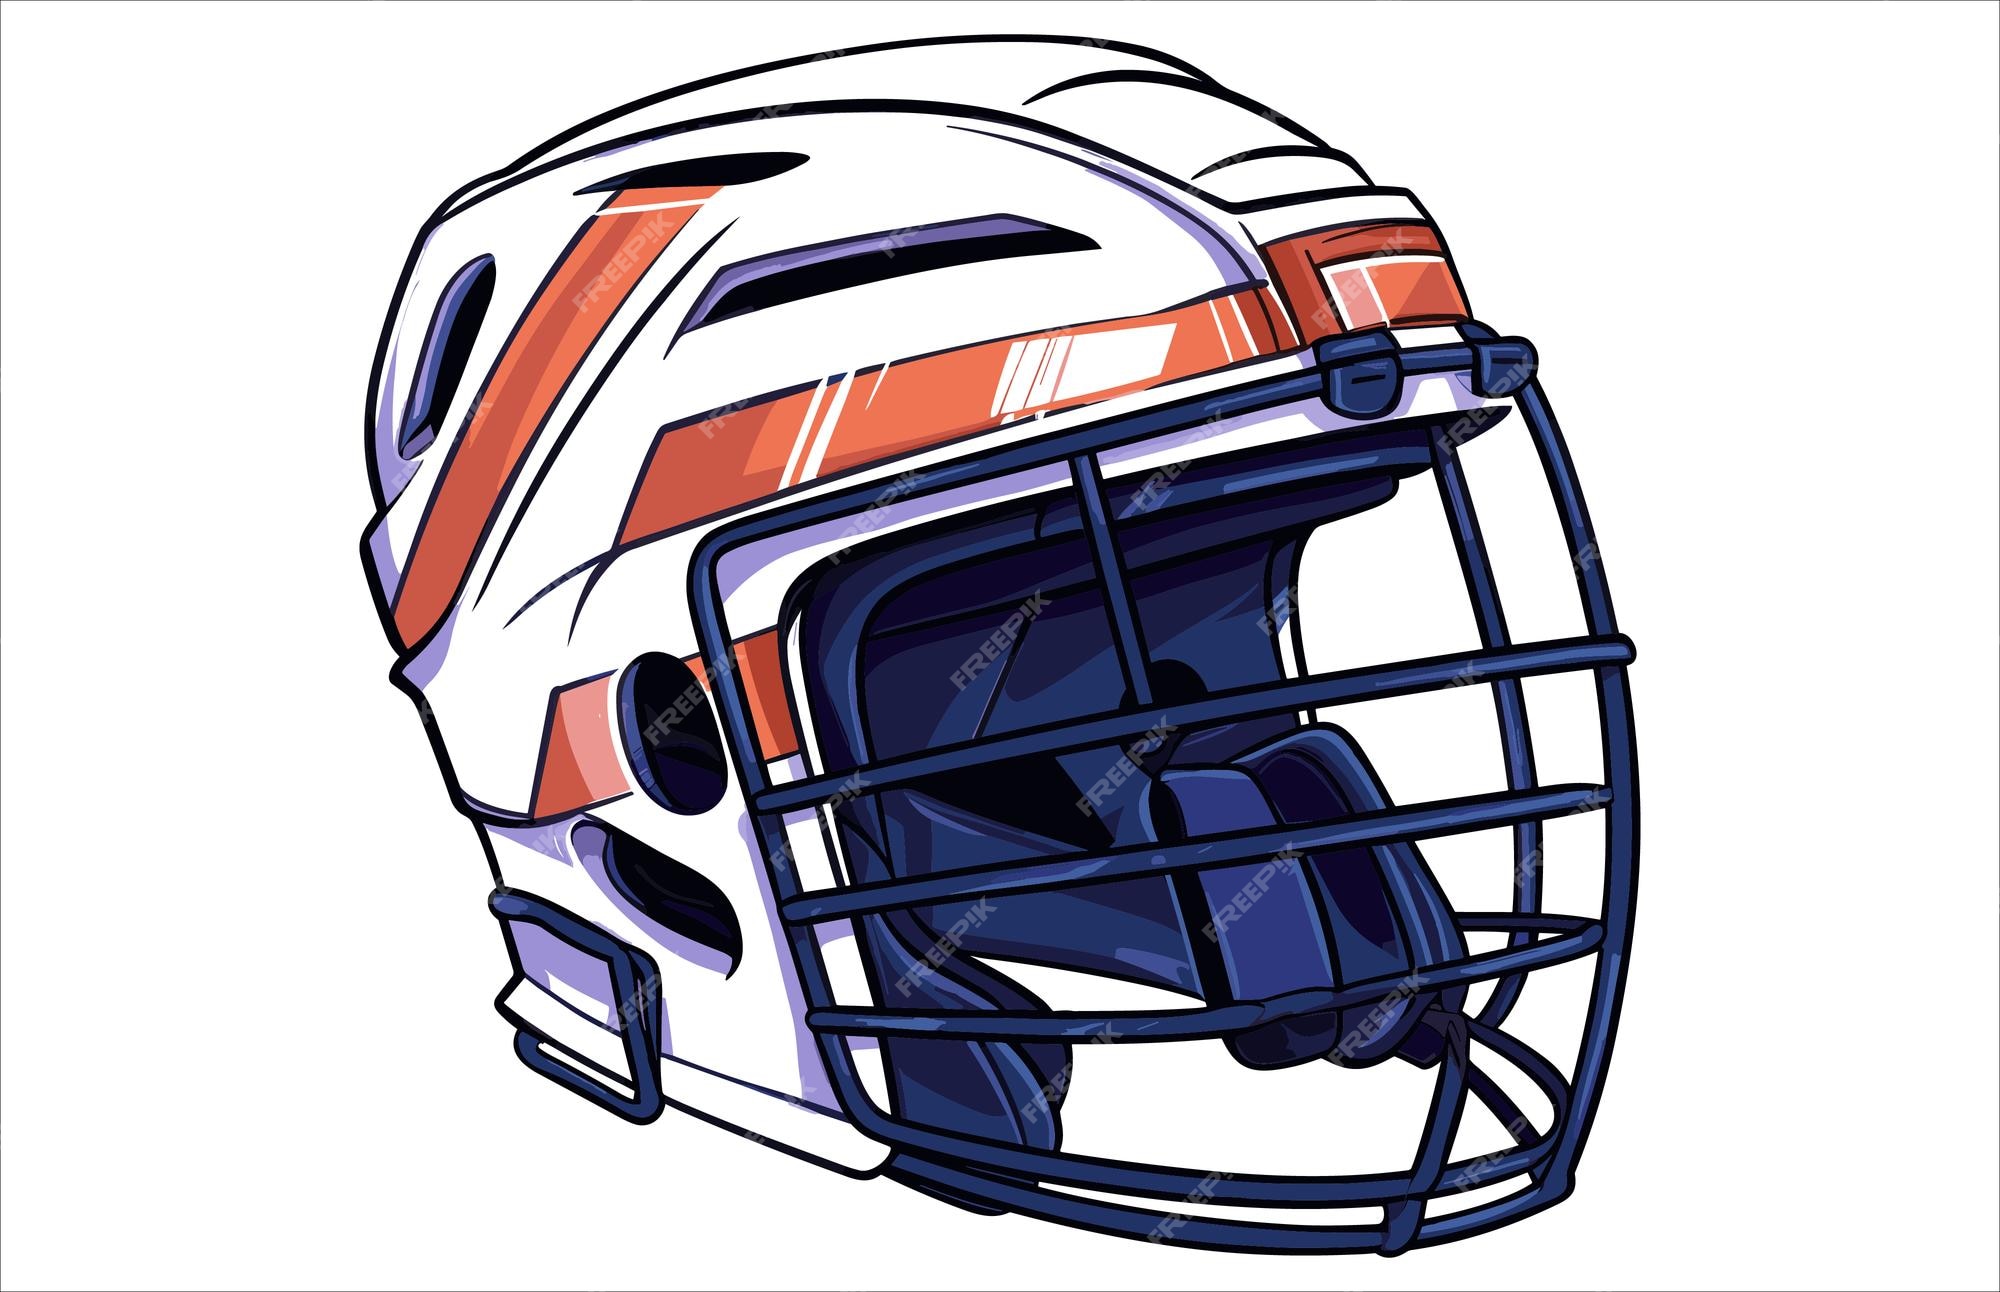 hockey helmet front clip art